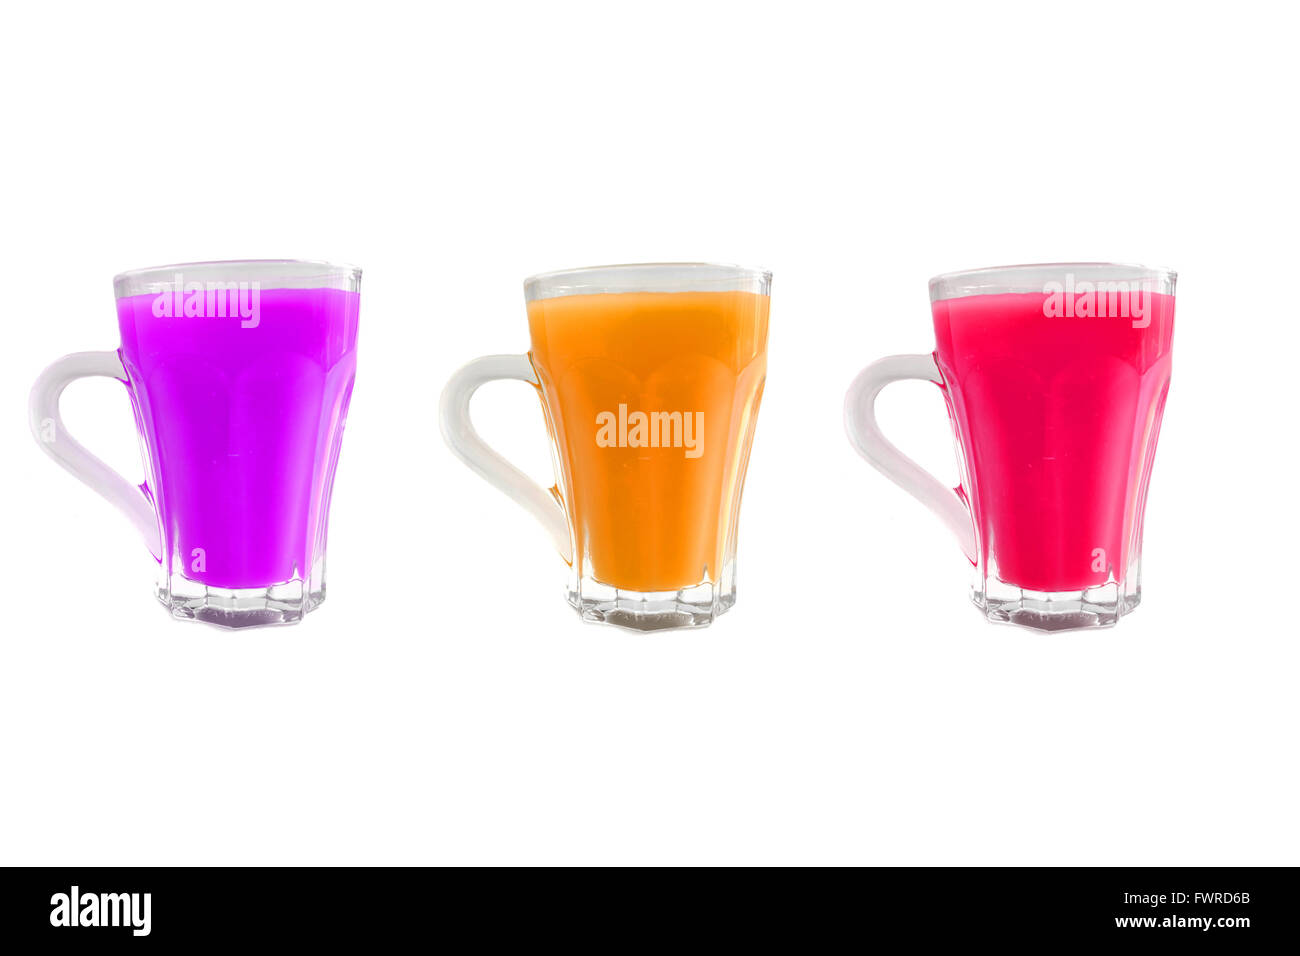 Trois tasses en verre avec des liquides de différentes couleurs en eux photographiés sur un fond blanc. Banque D'Images